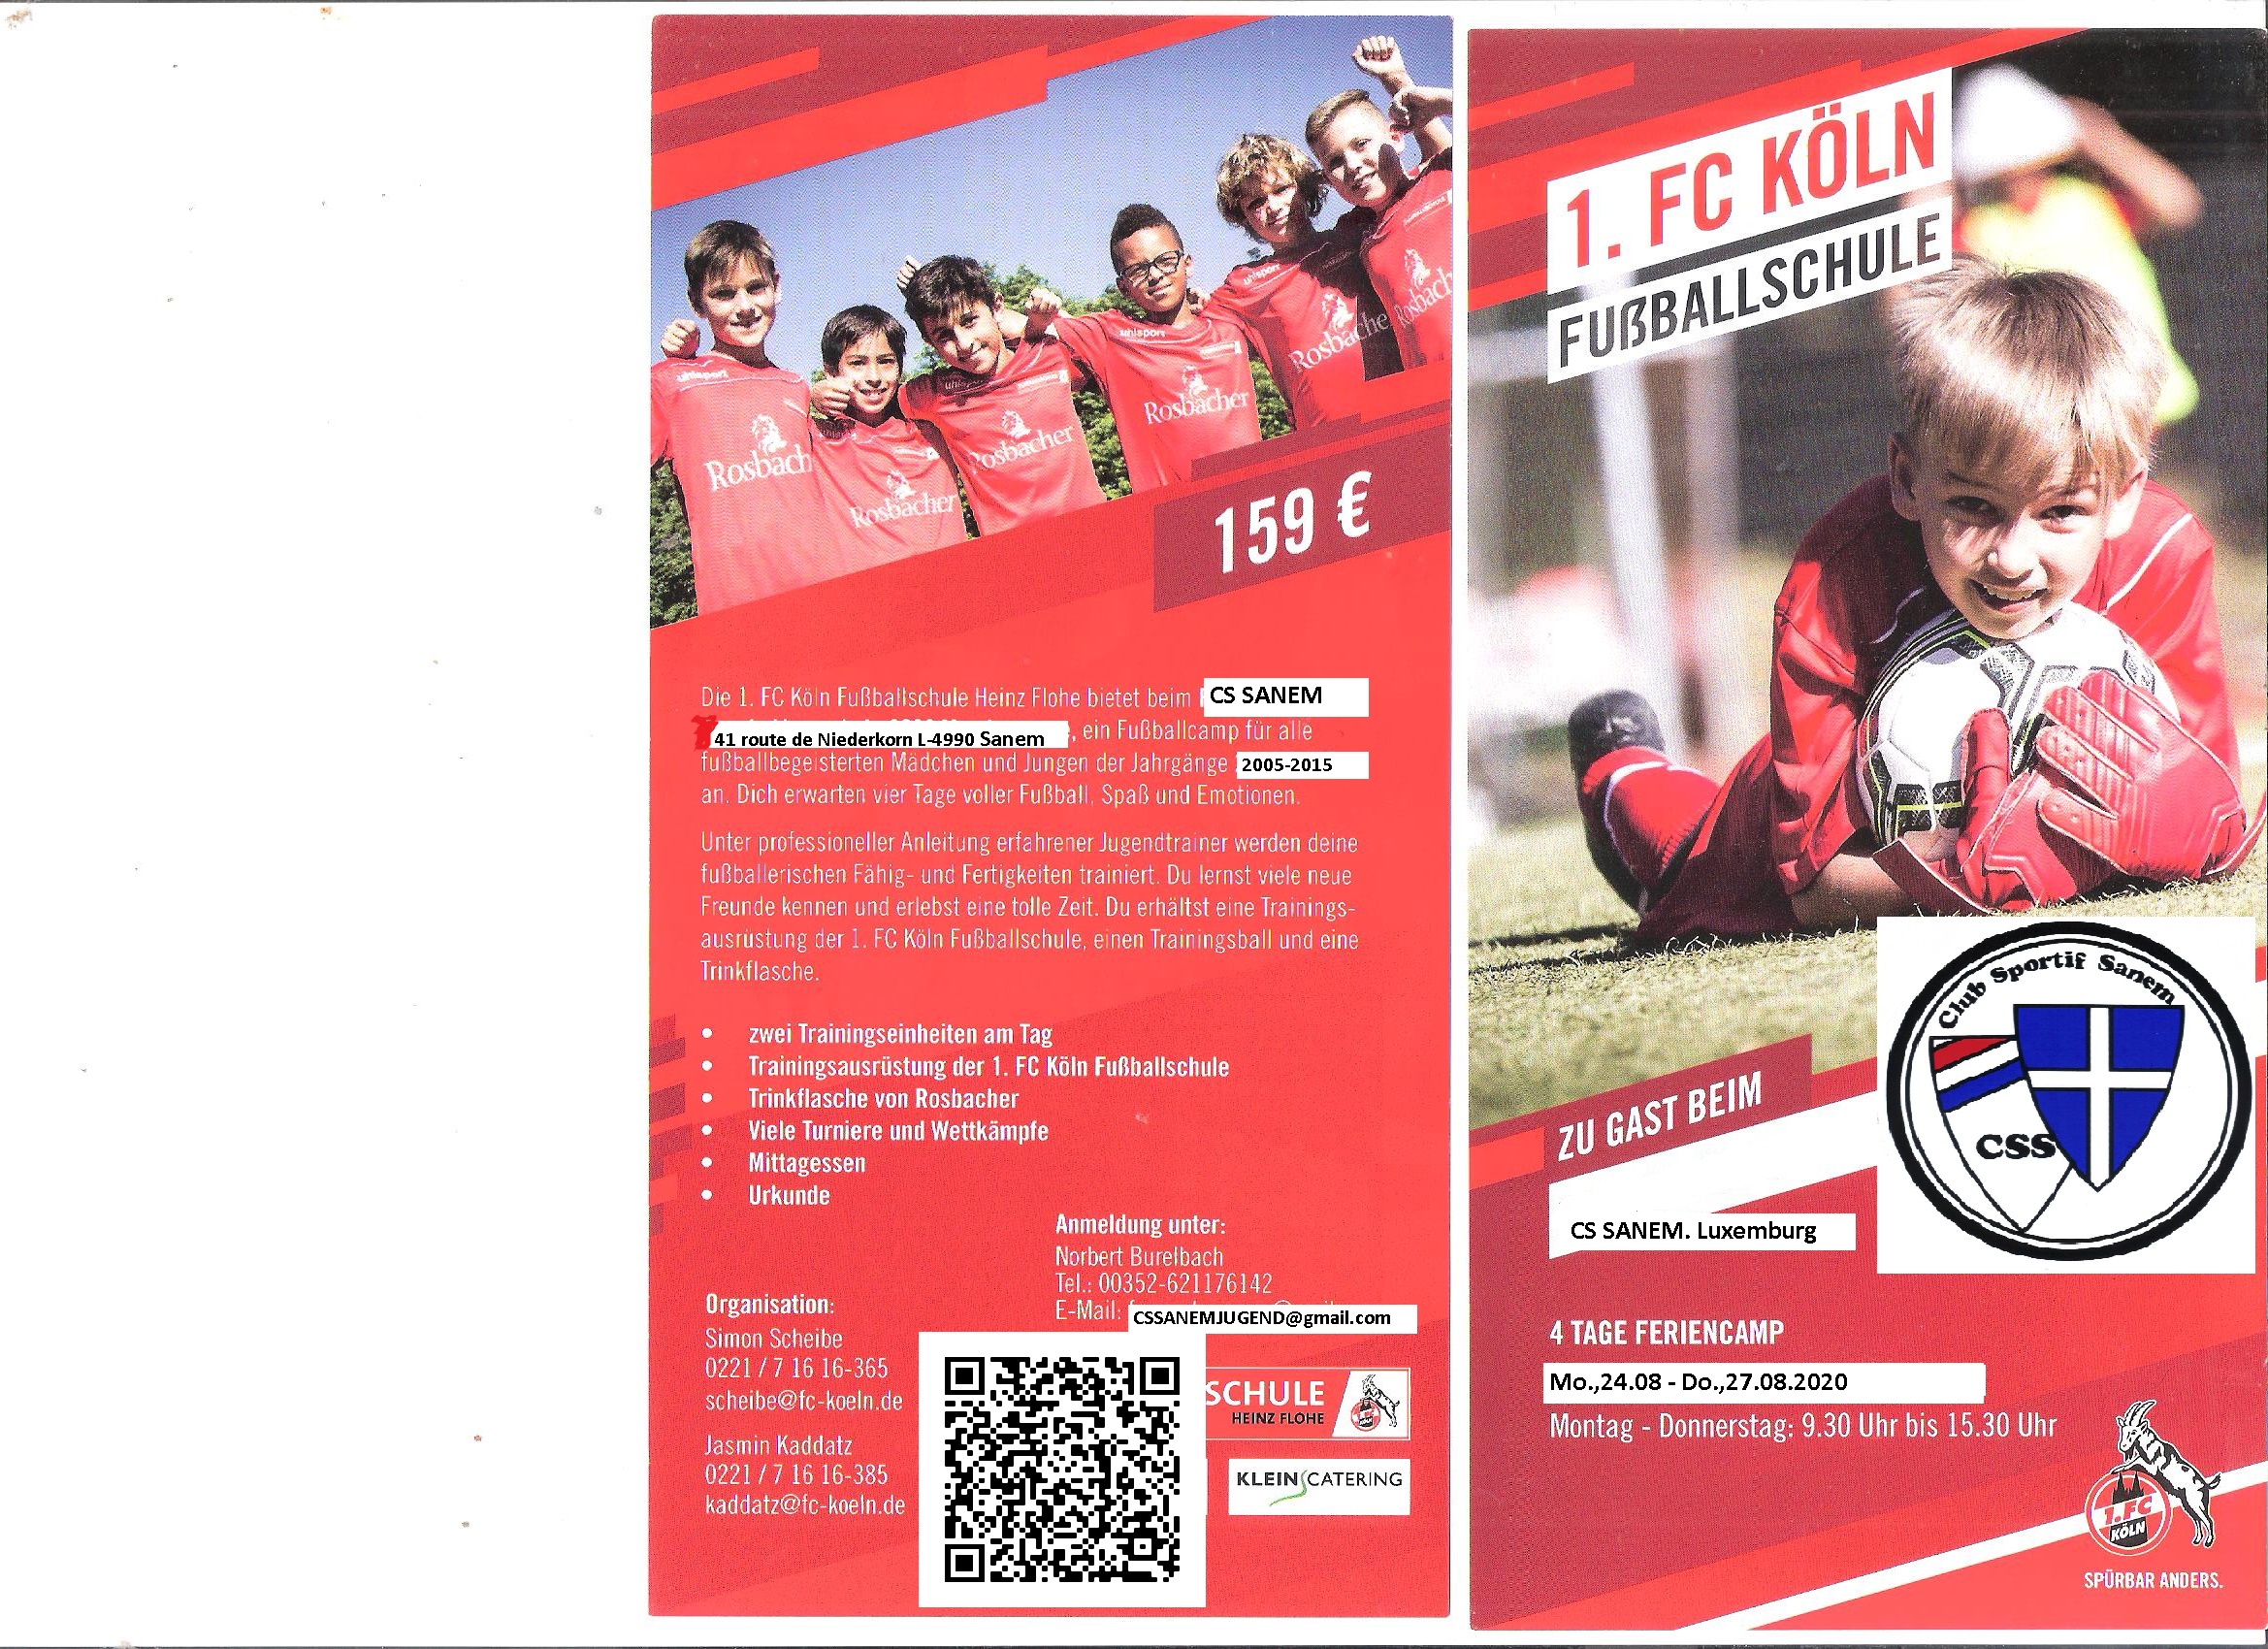 Fussballstage fier Kanner vun 2005-2015 mat Trainer vum 1 Fc Köln zu Sanem 